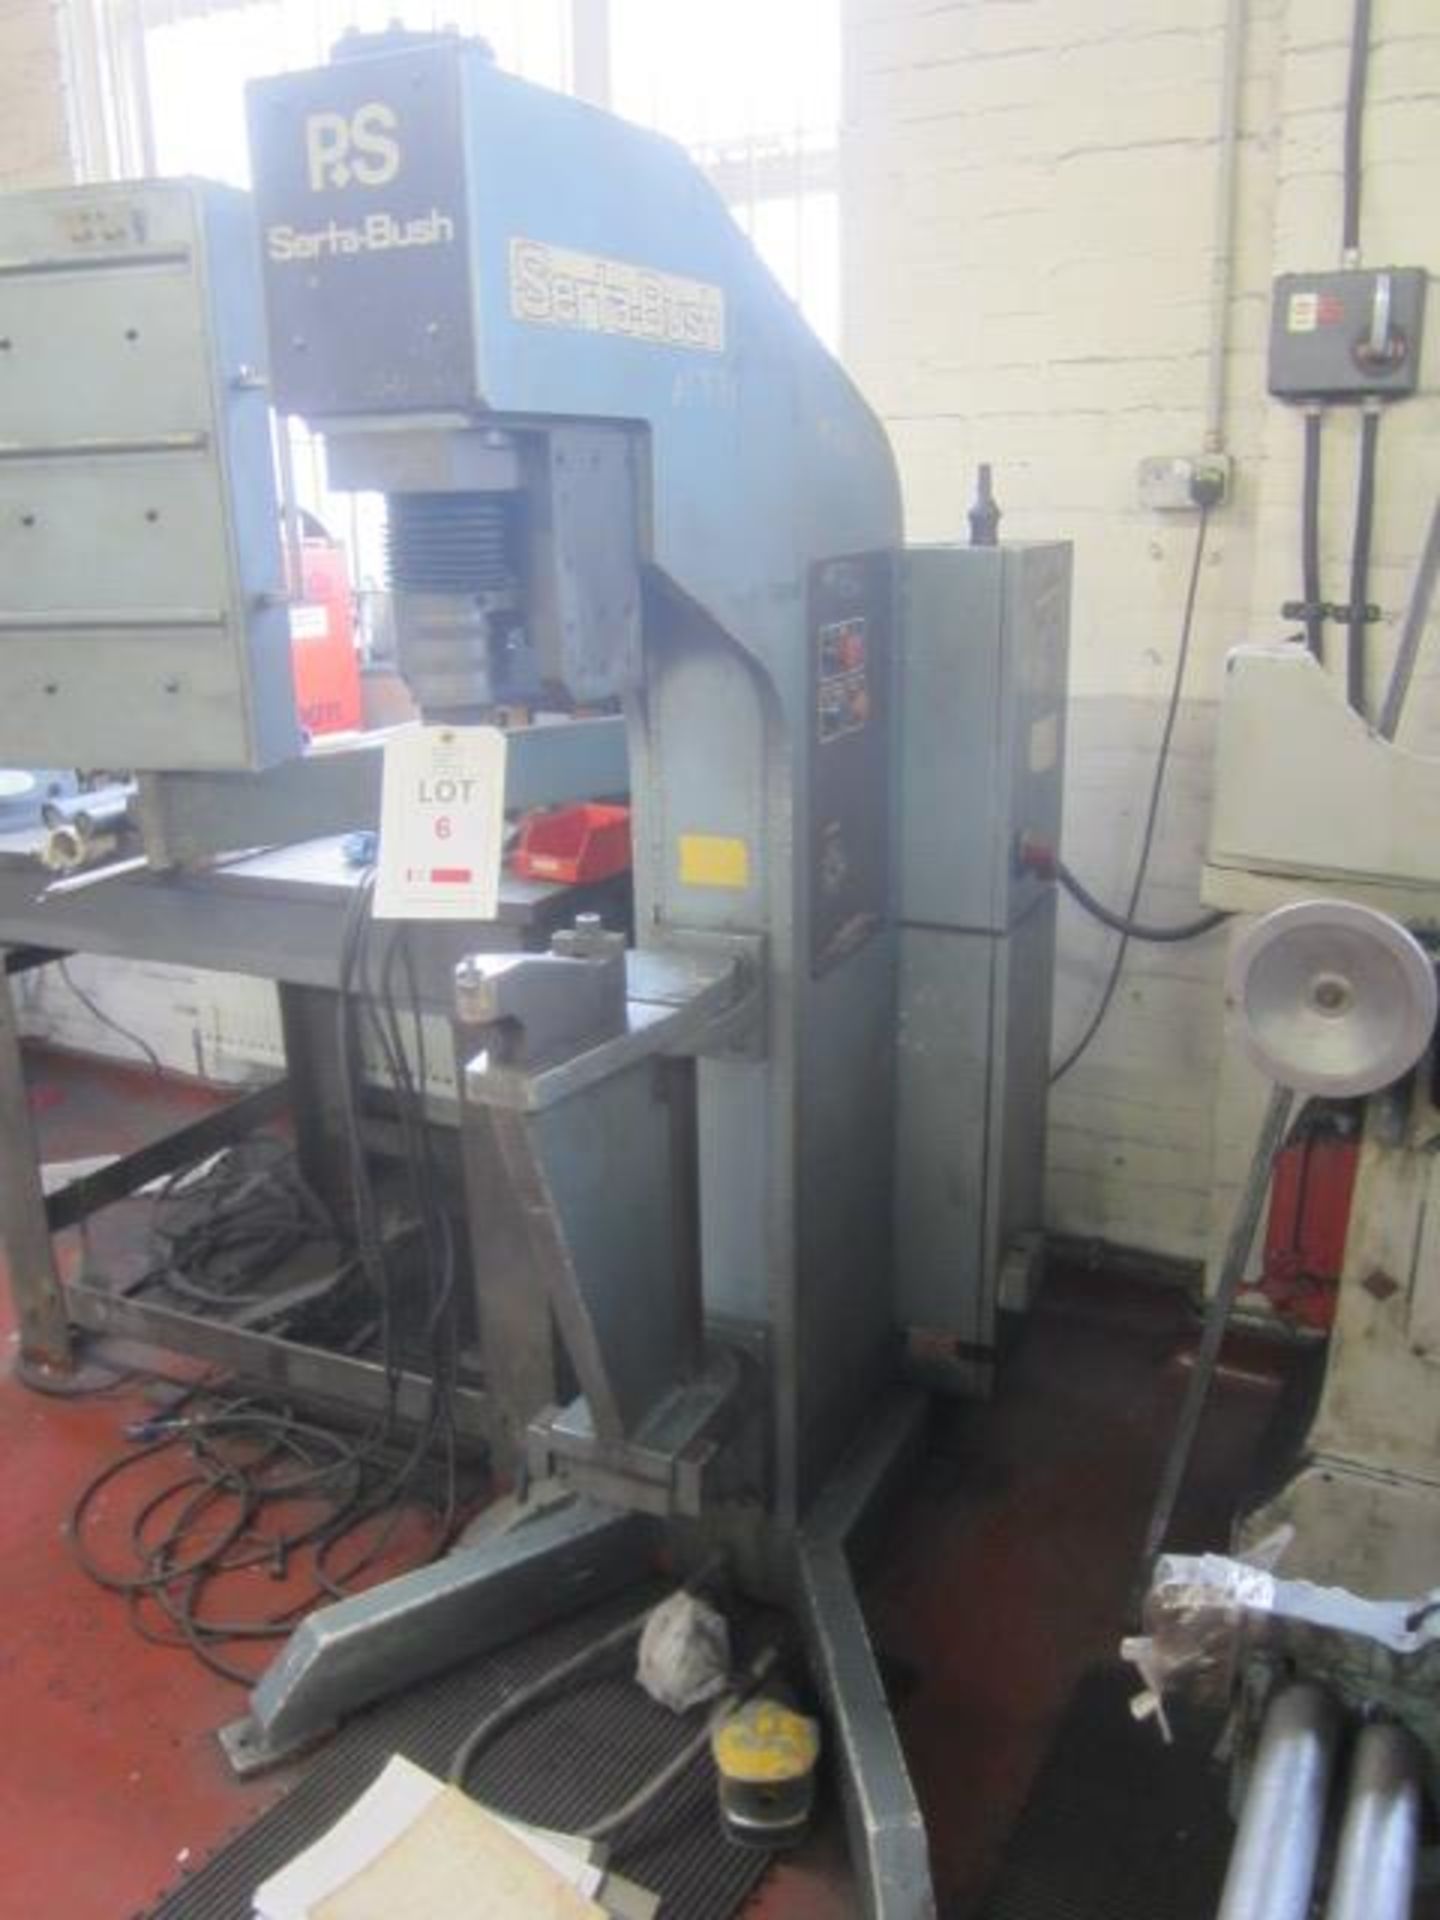 Press & Shear Serta bush model 500 press, pressure capacity 8.5 ton (max 10 ton), M2.5 to M12 into